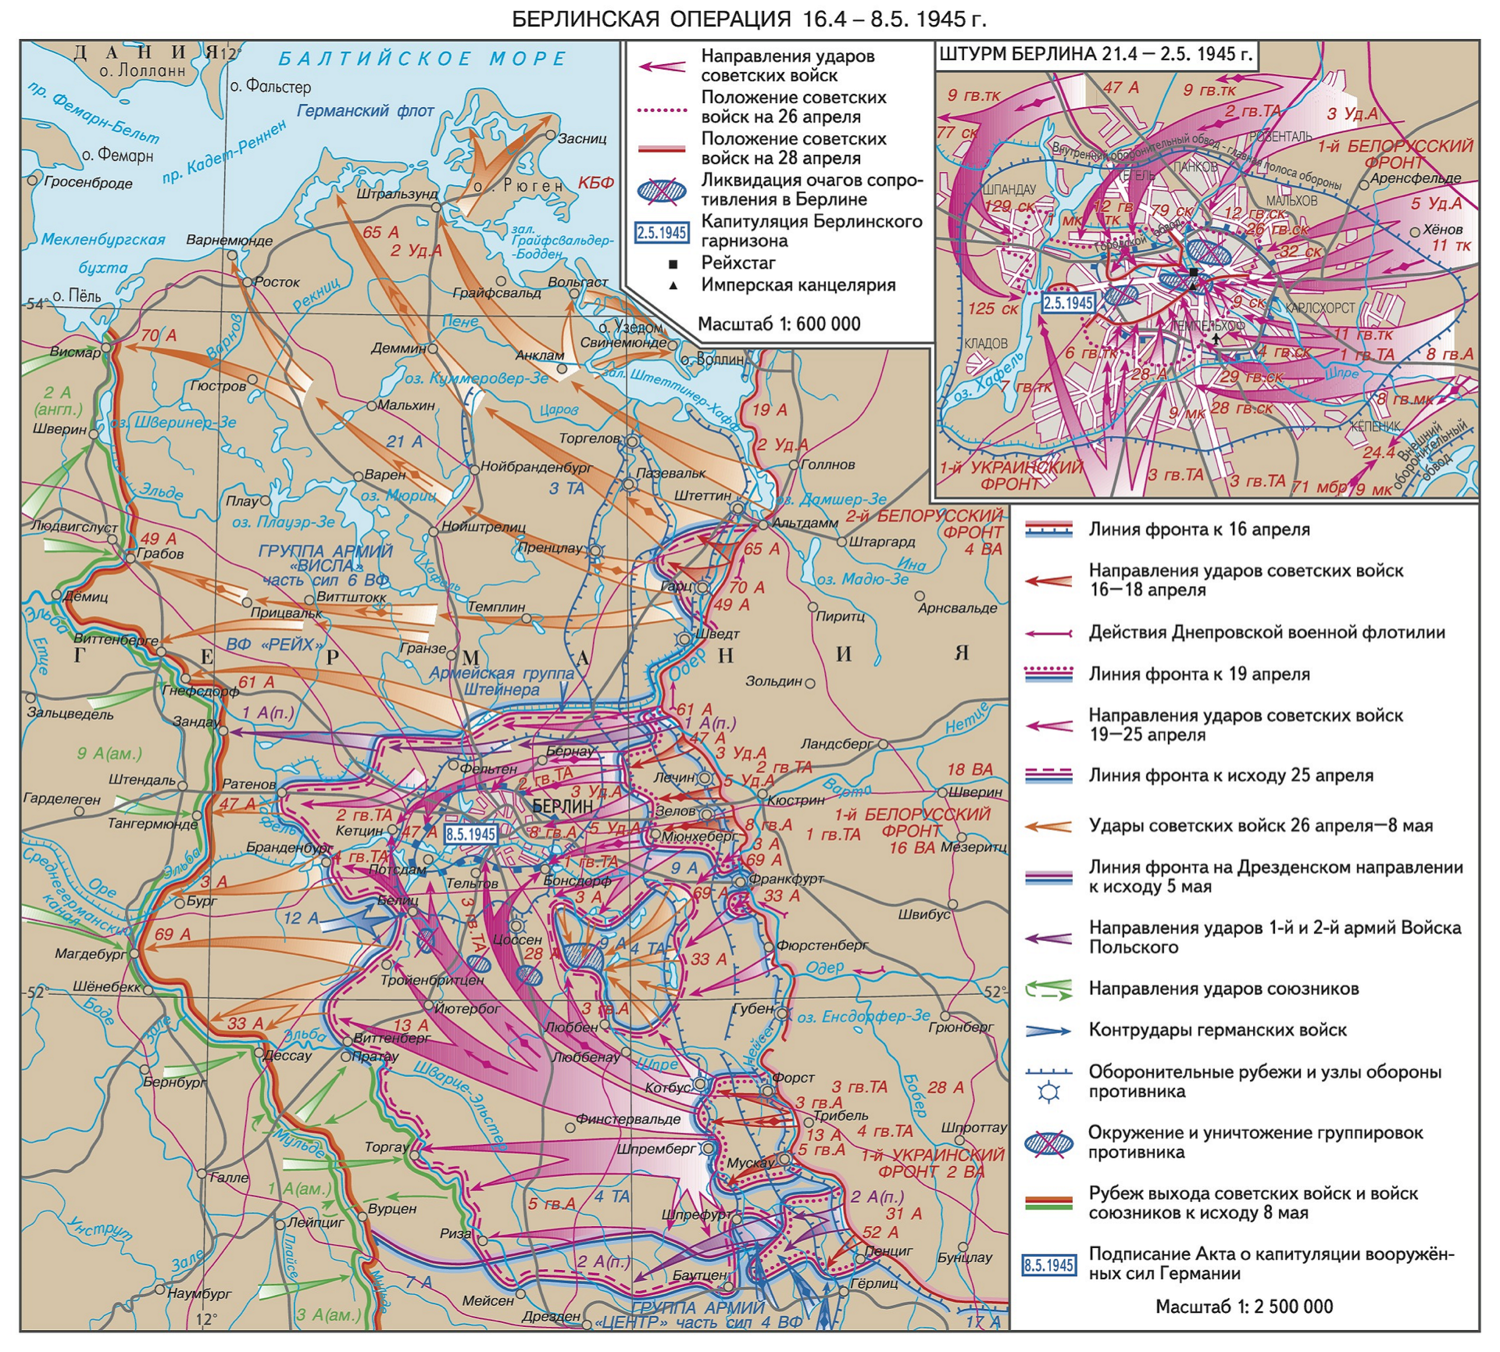 16 апреля берлинская операция. Берлинская операция 1945 г карта. Операция Берлин 1945 карта. Карта Берлинской операции 1945 года. Карта Берлинской операции 16 апреля- 8 мая 1945.